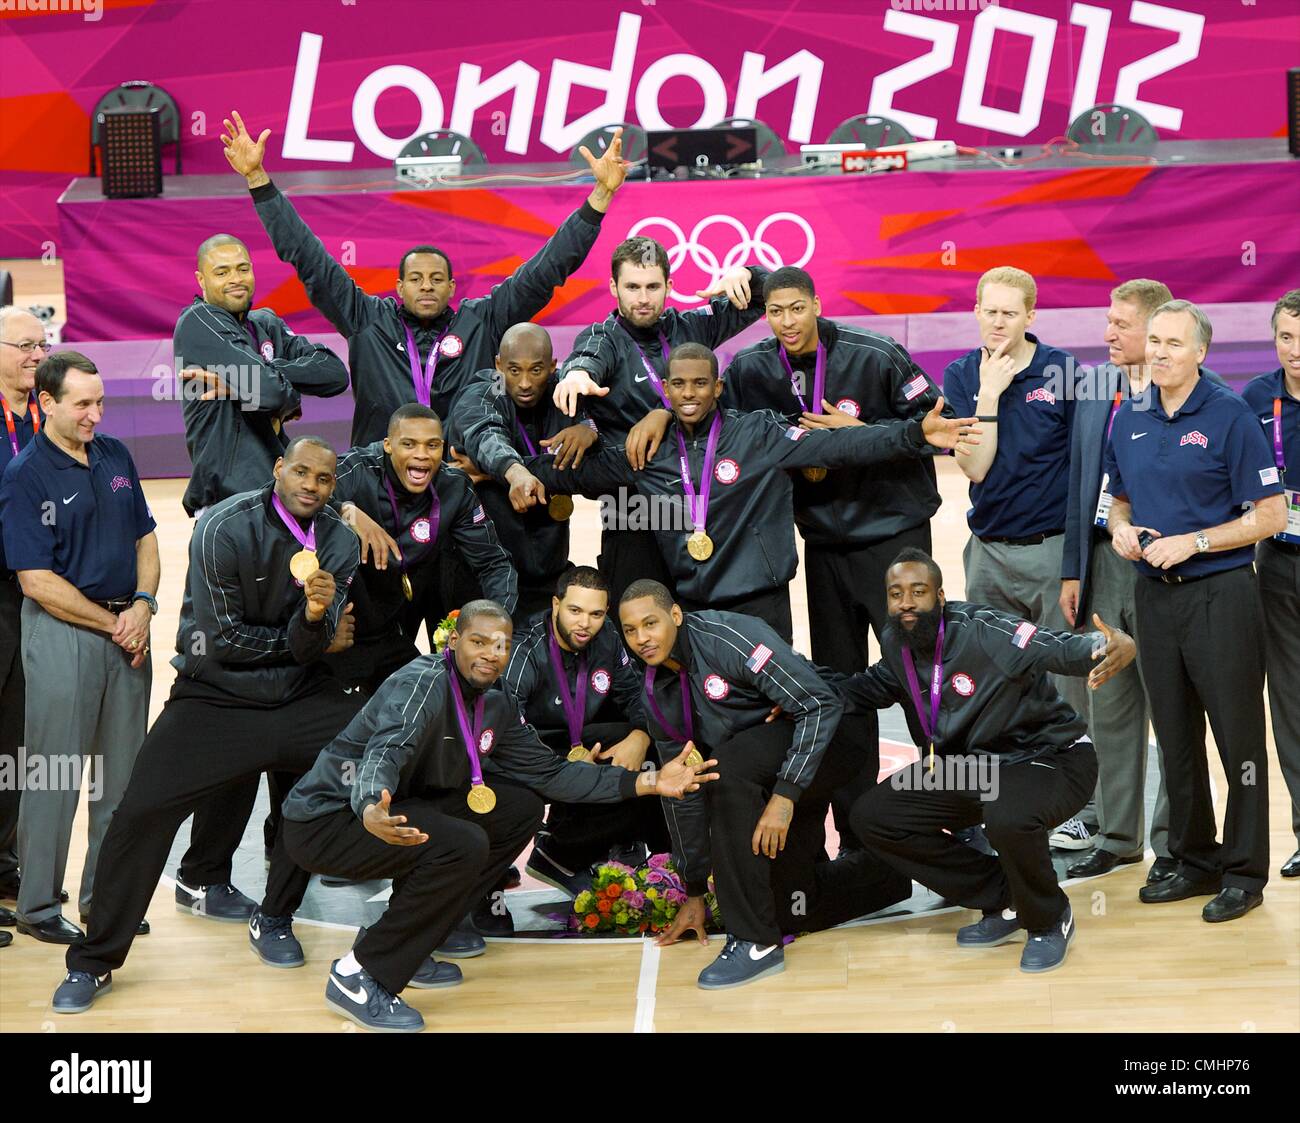 Aug. 12, 2012 - London, England, United Kingdom - USA basketball